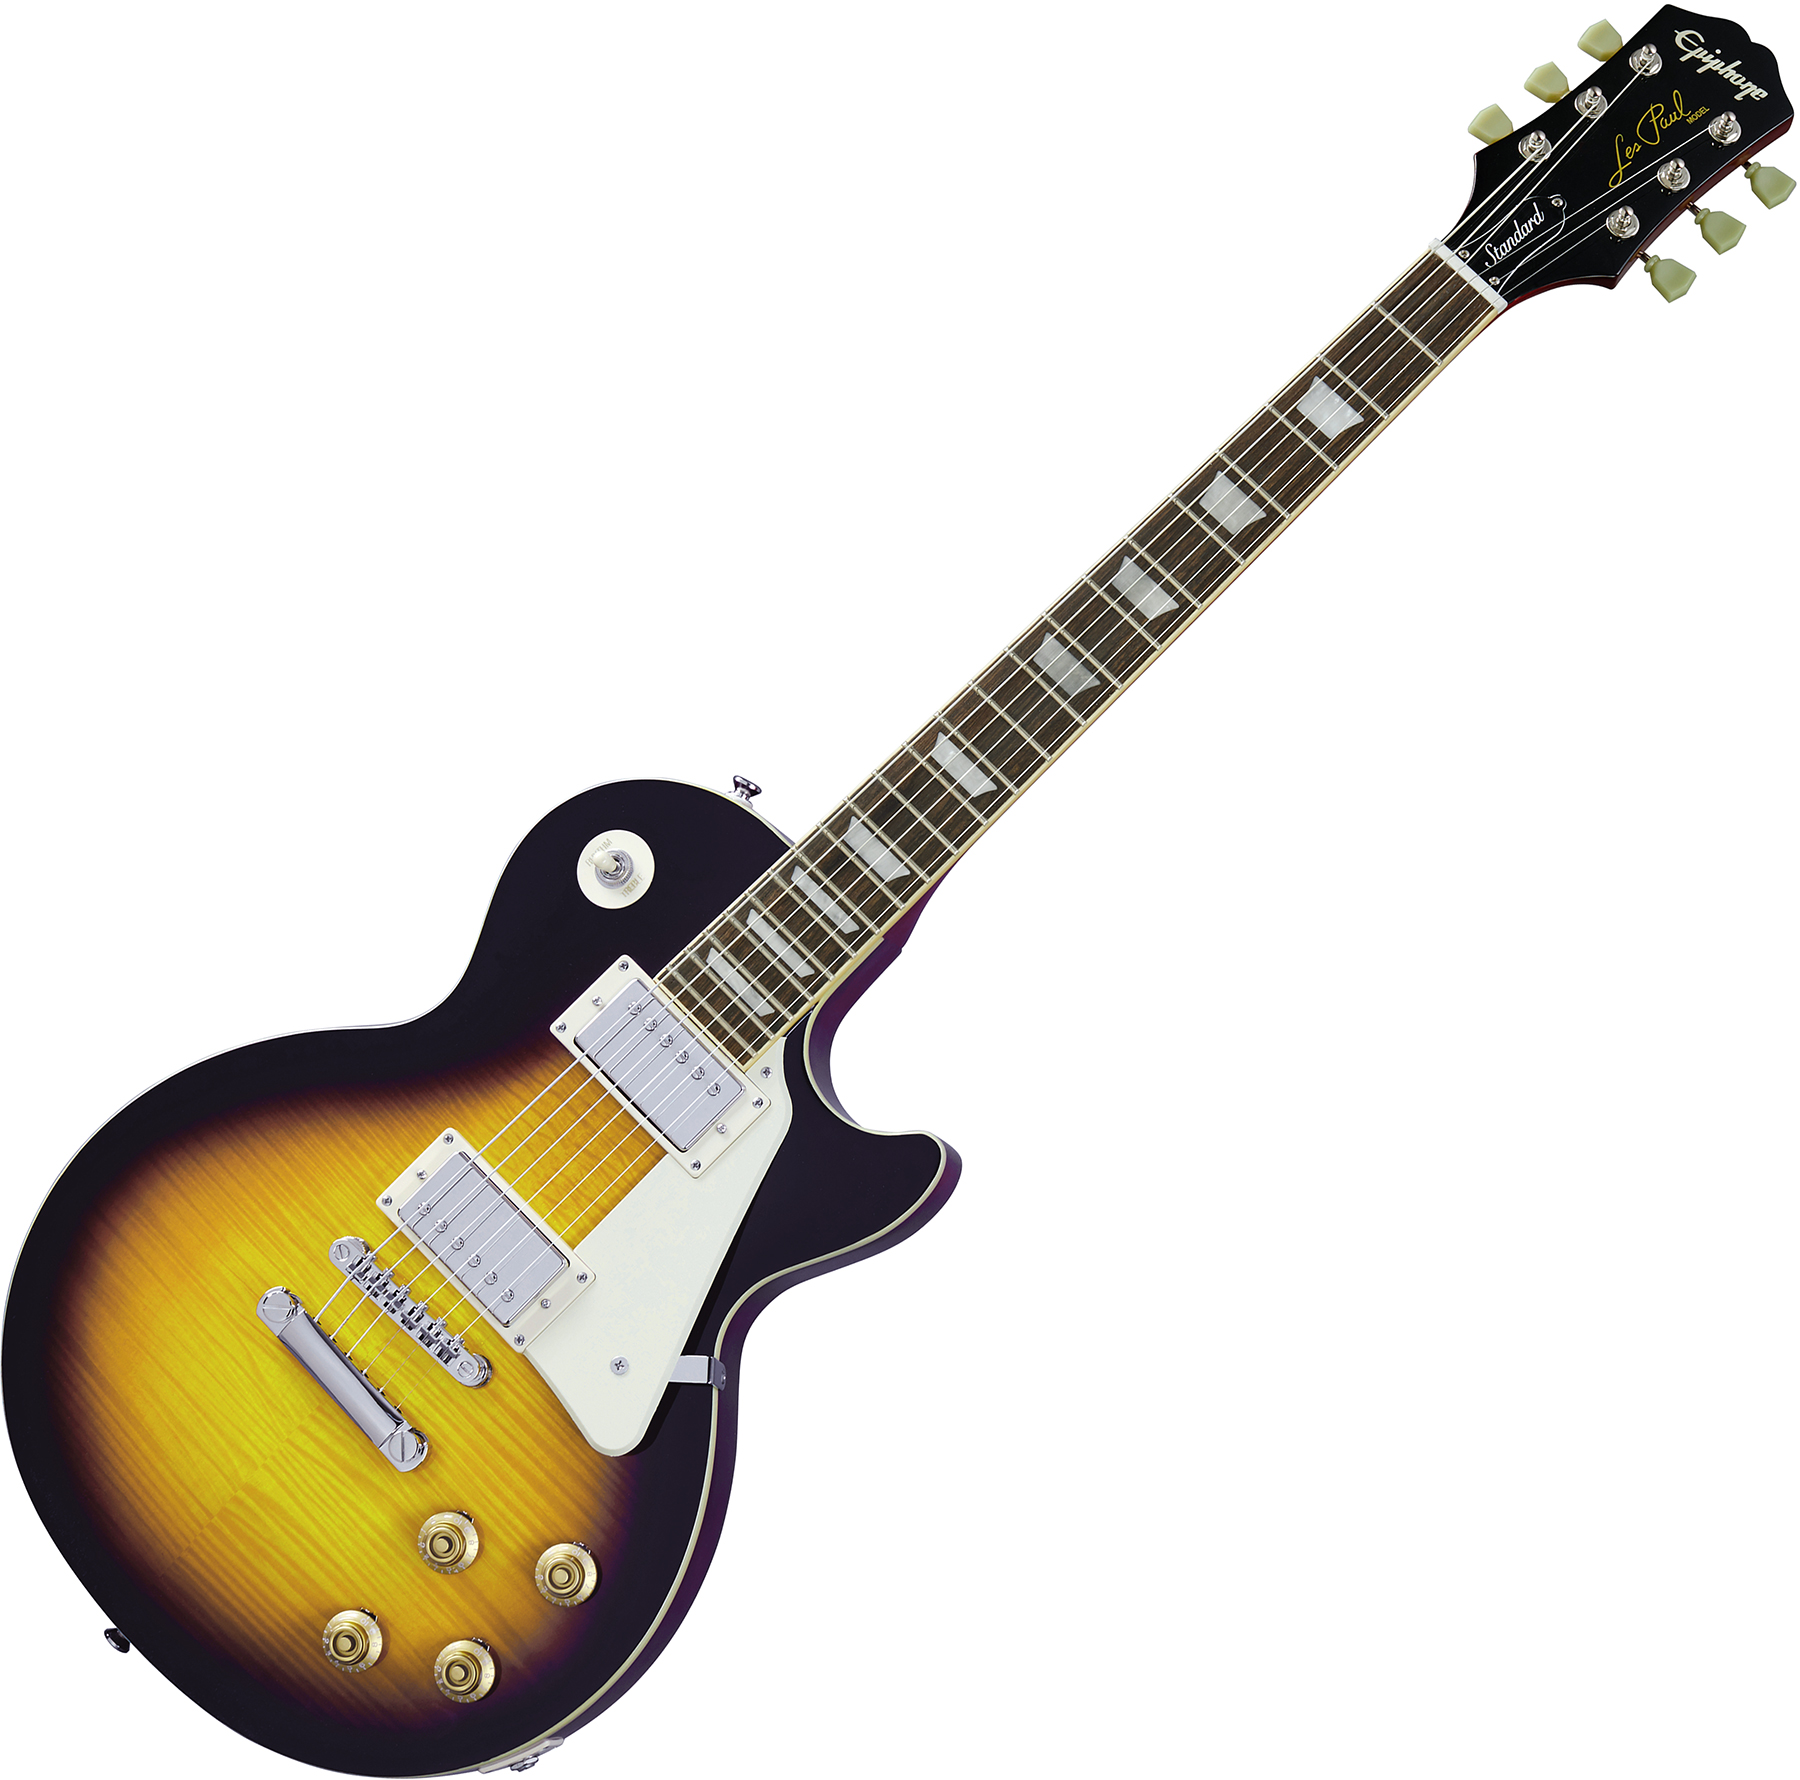 Epiphone Les Paul Standard 50s 2h Ht Rw - Vintage Sunburst - Guitarra eléctrica de corte único. - Variation 3